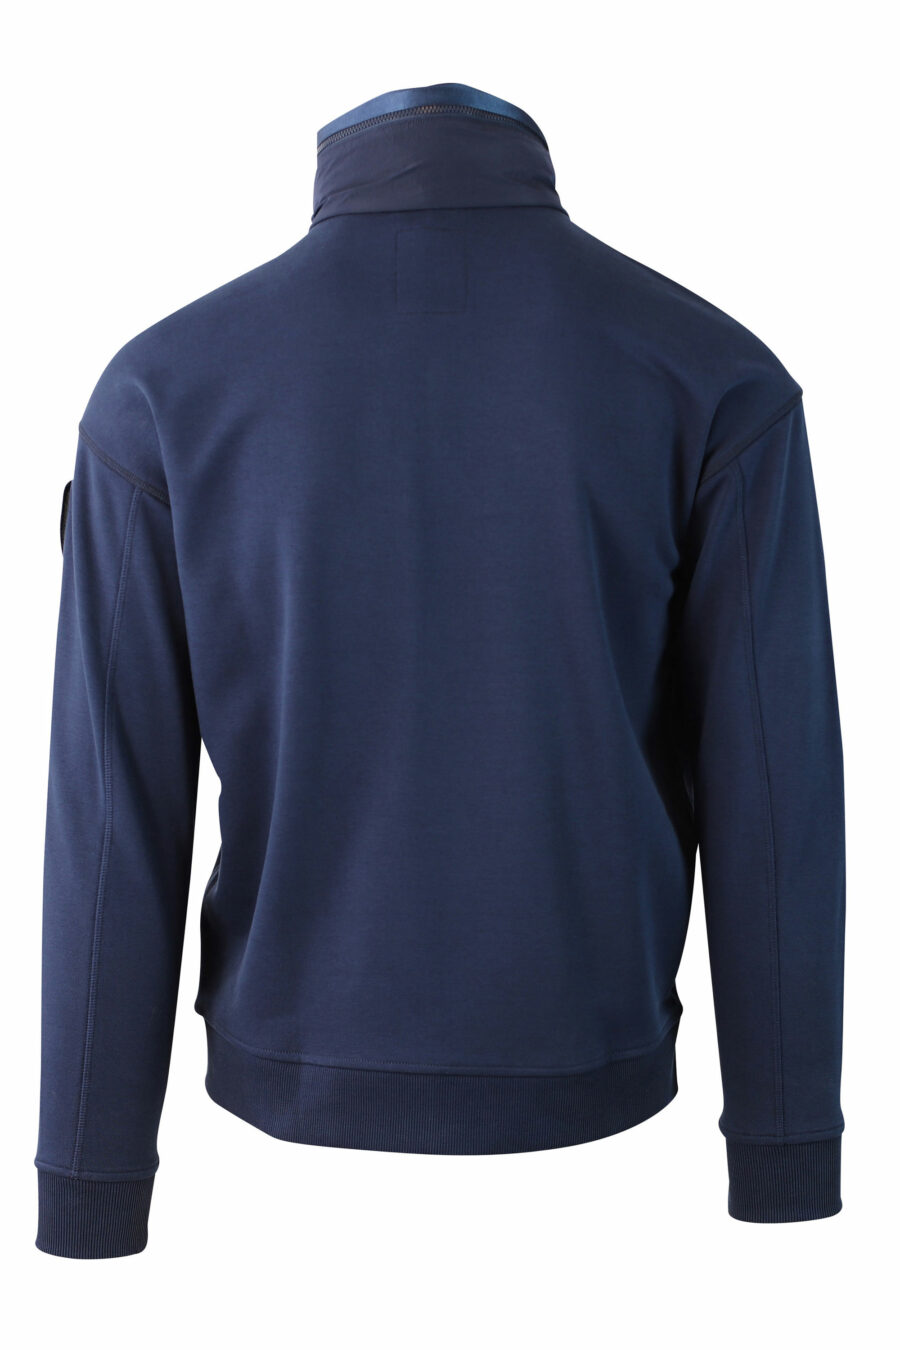 Blue fleece sweatshirt with zip and patch - IMG 0029 1